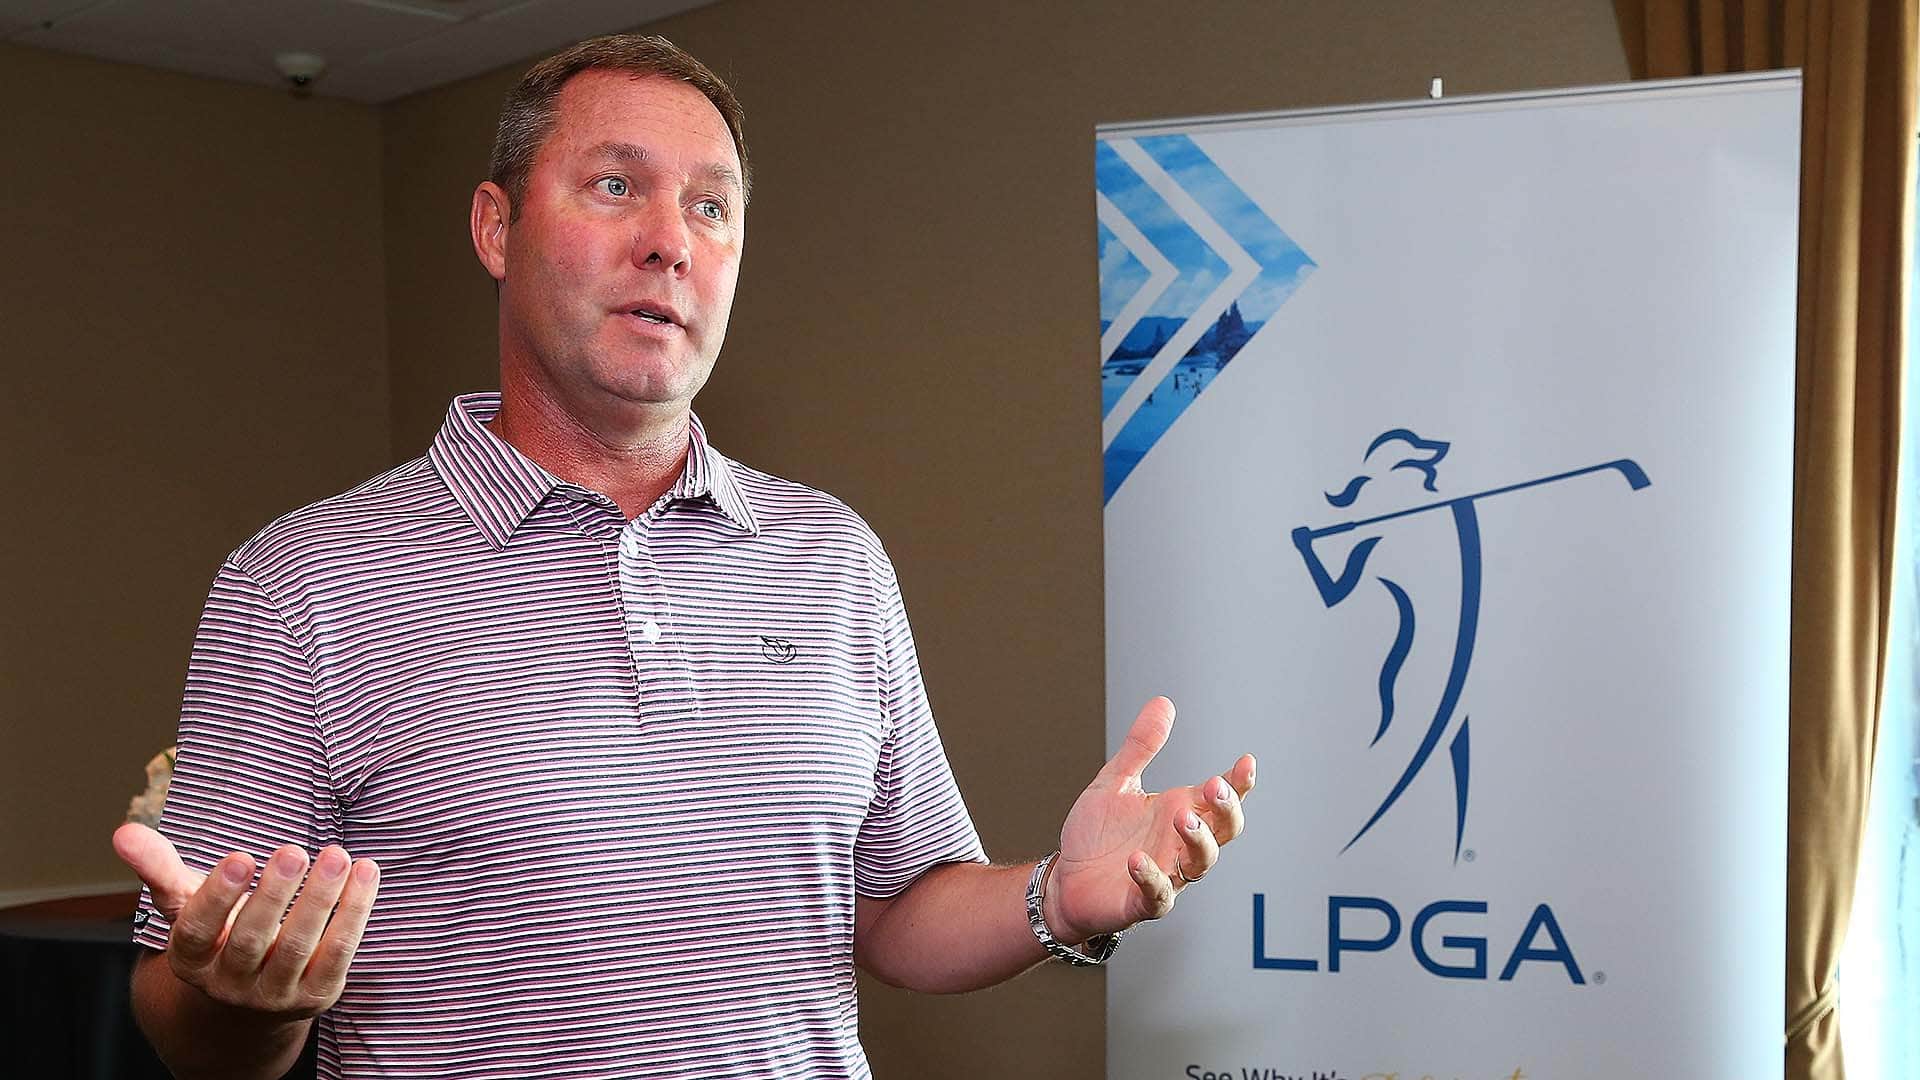 LPGA, Symetra to merge 2020-21 seasons for eligibility, rankings